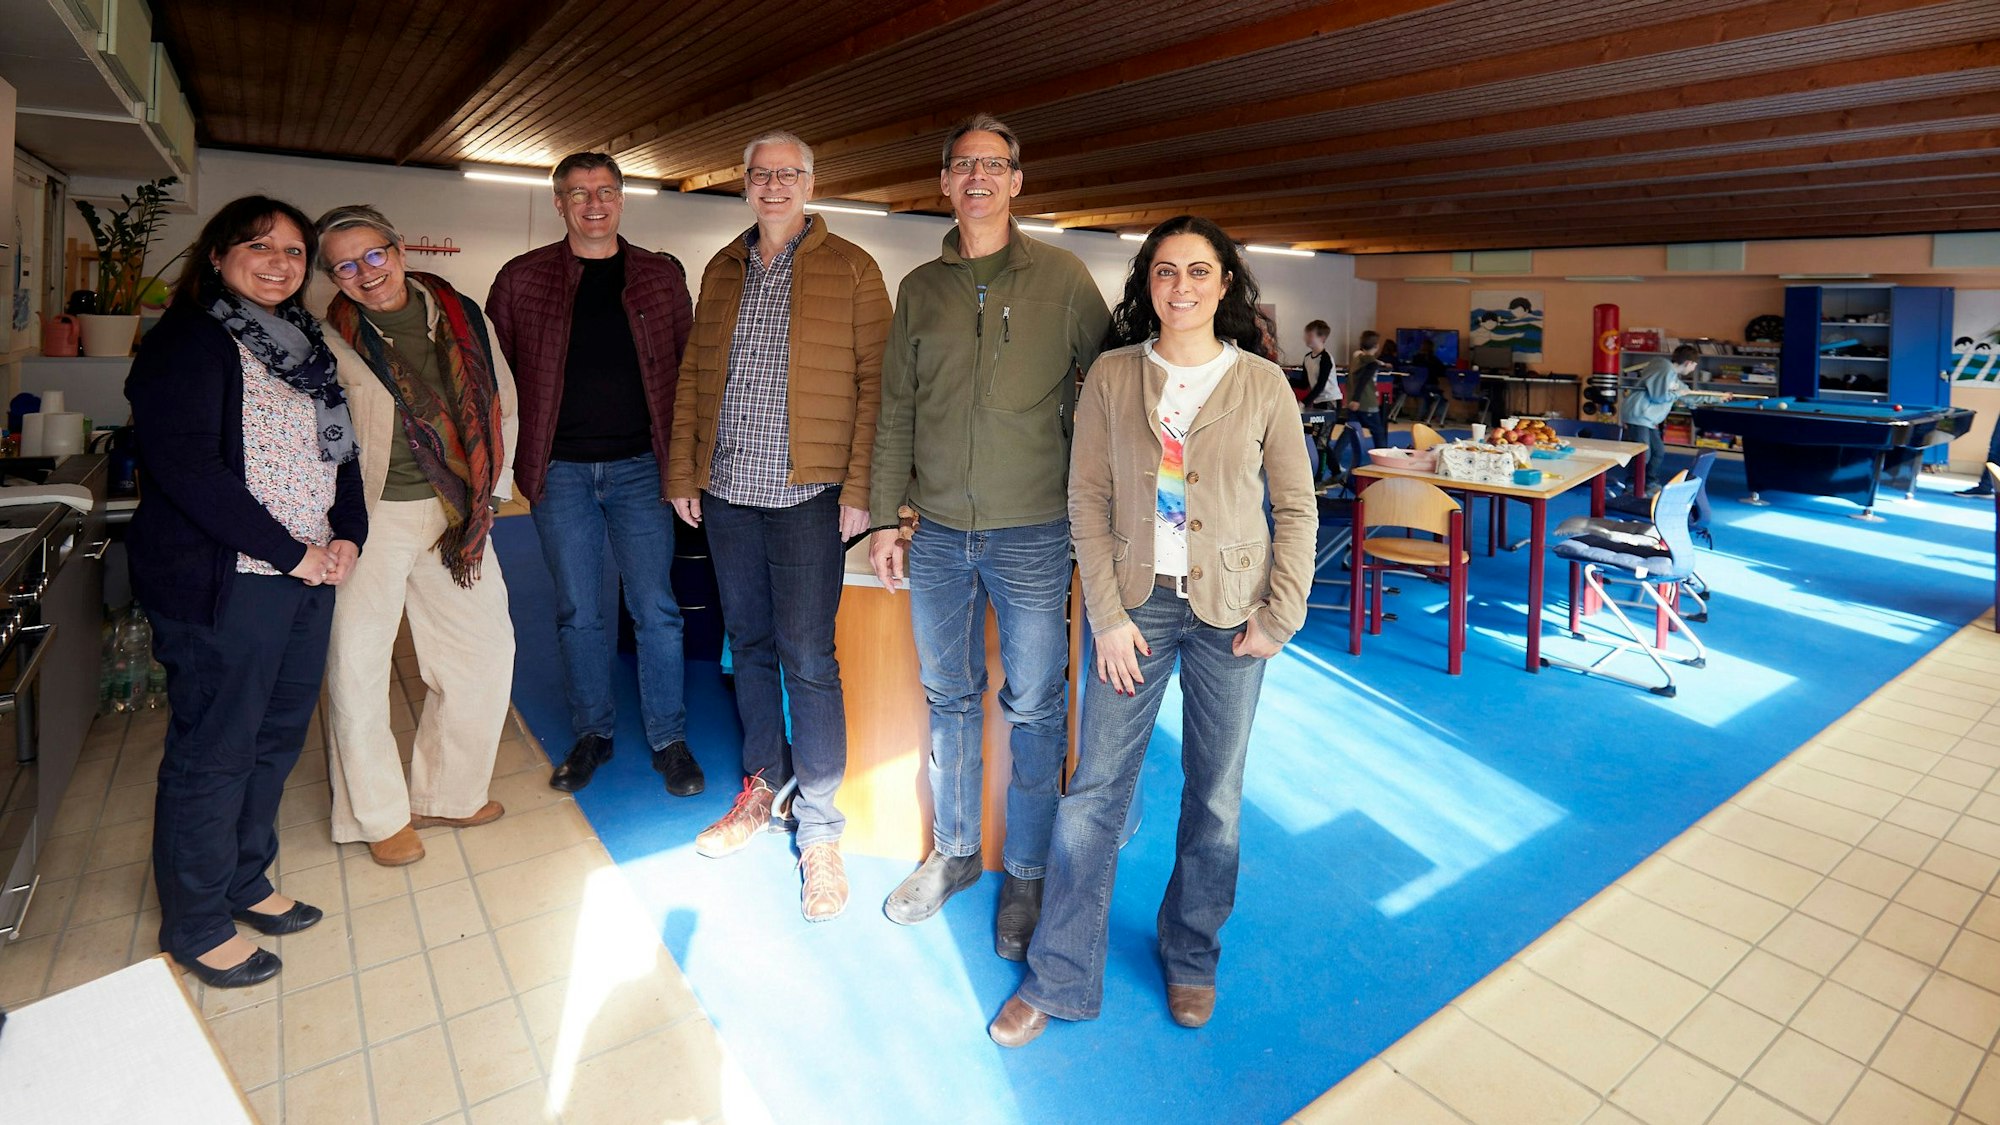 Drei Frauen und drei Männer stehen im neuen Jugendraum in Blankenheim. Der blaue Teppich soll an die Vergangenheit des Raumes als Lehrschwimmbecken erinnern.